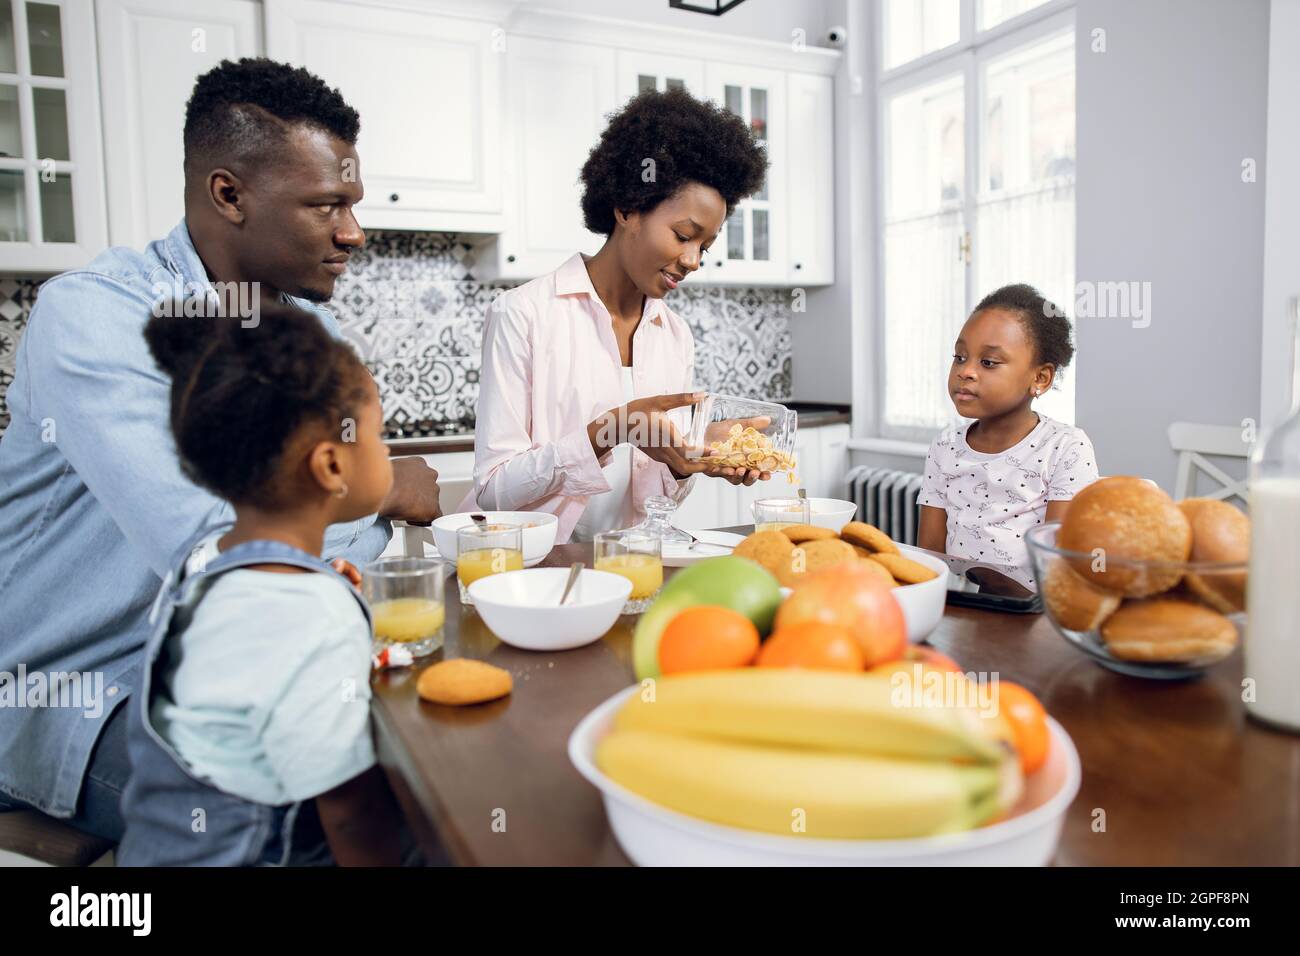 Hübsche afrikanische Schwestern, die mit jungen Eltern in einer modernen, hellen Küche sitzen. Positive Familie, die zum Frühstück Cerealien mit Milch isst. Morgens zu Hause. Stockfoto